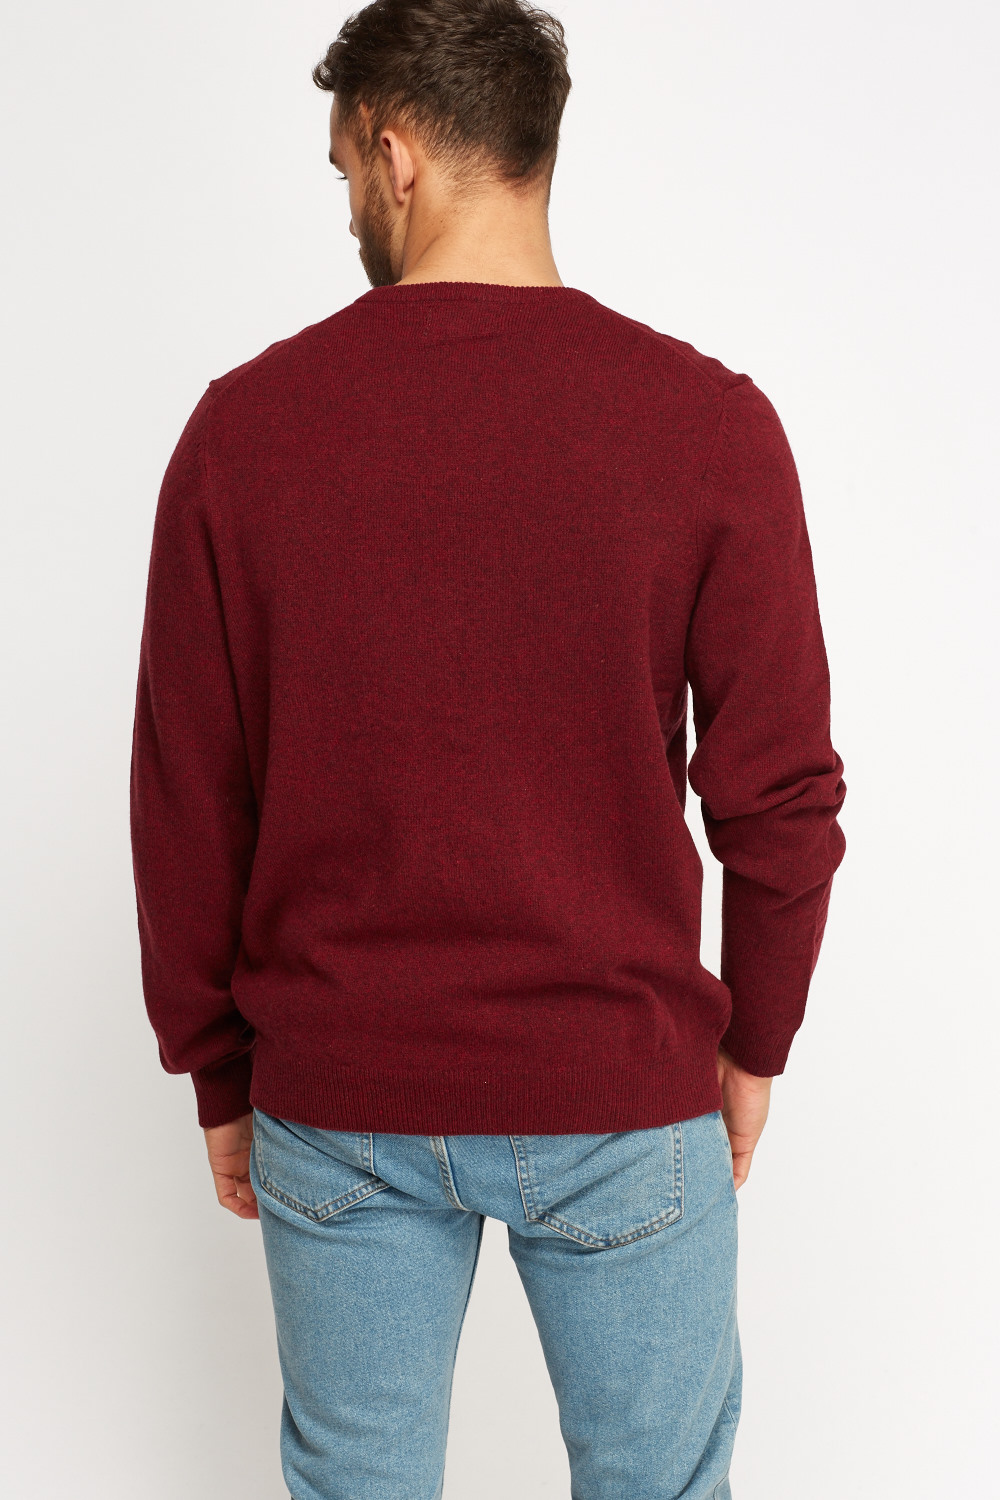 Maroon Knitted V- Neck Jumper - Just $7